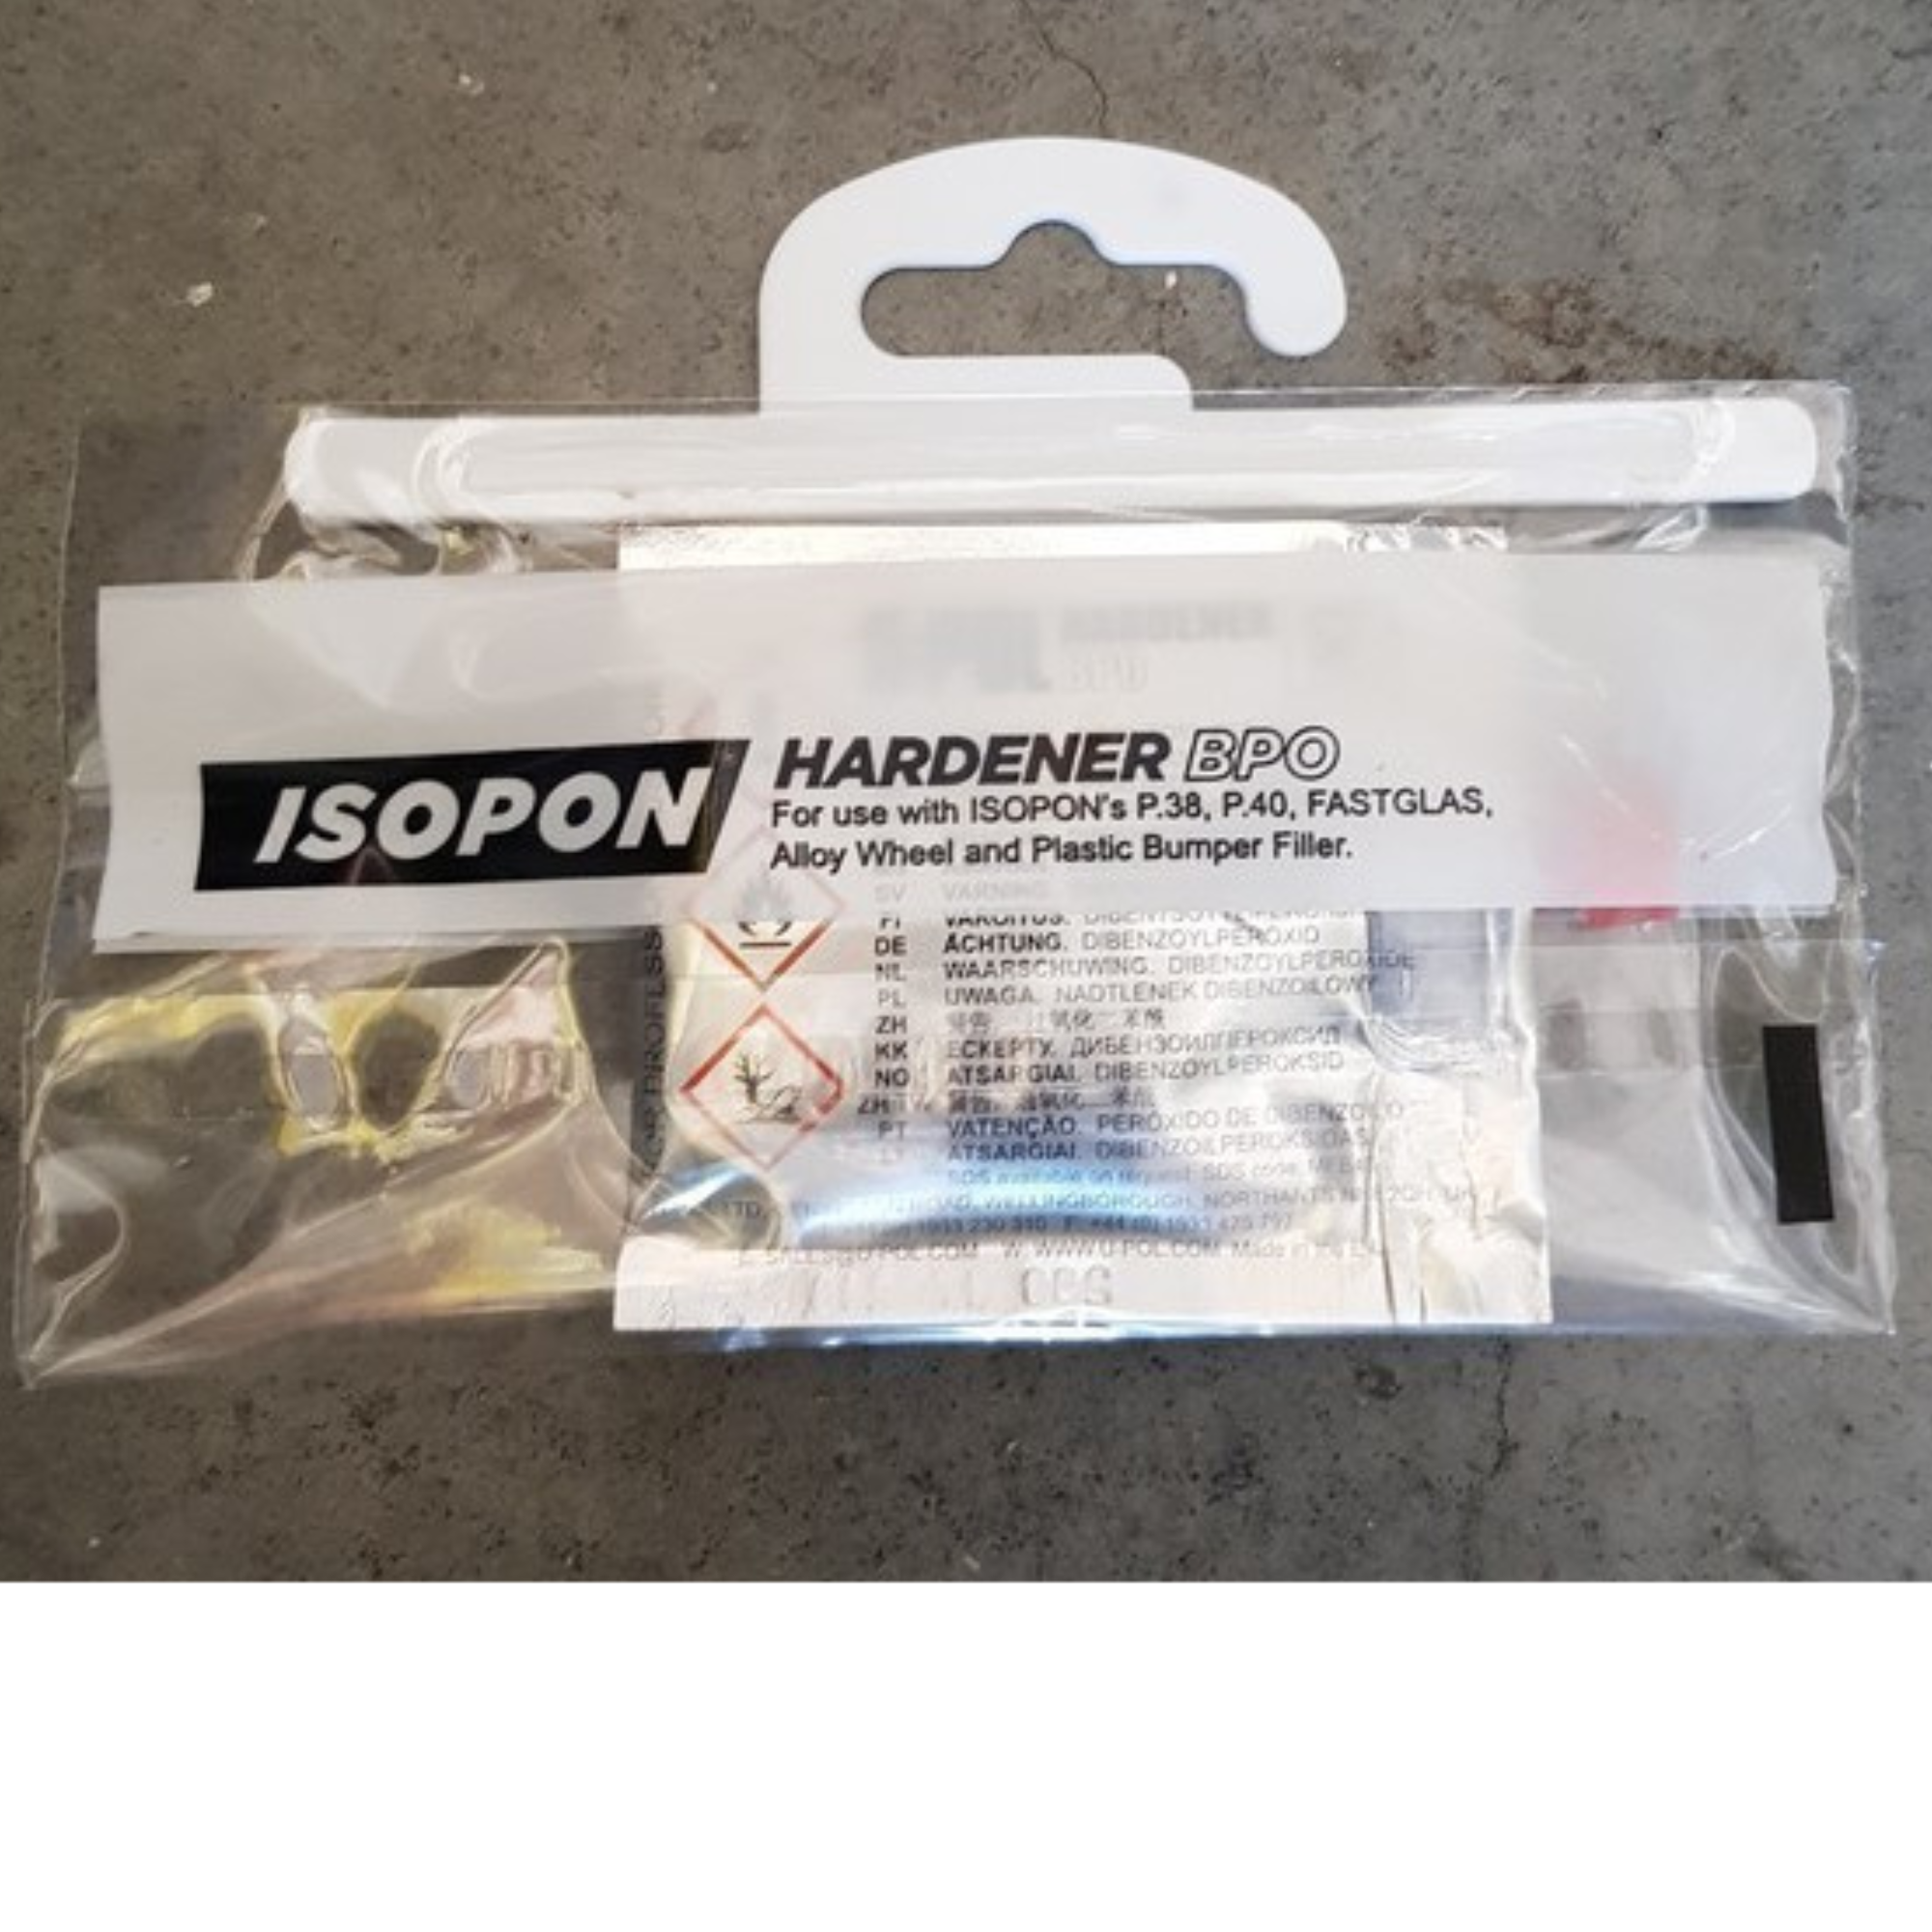 Isopon BPO Hardener 19.5G